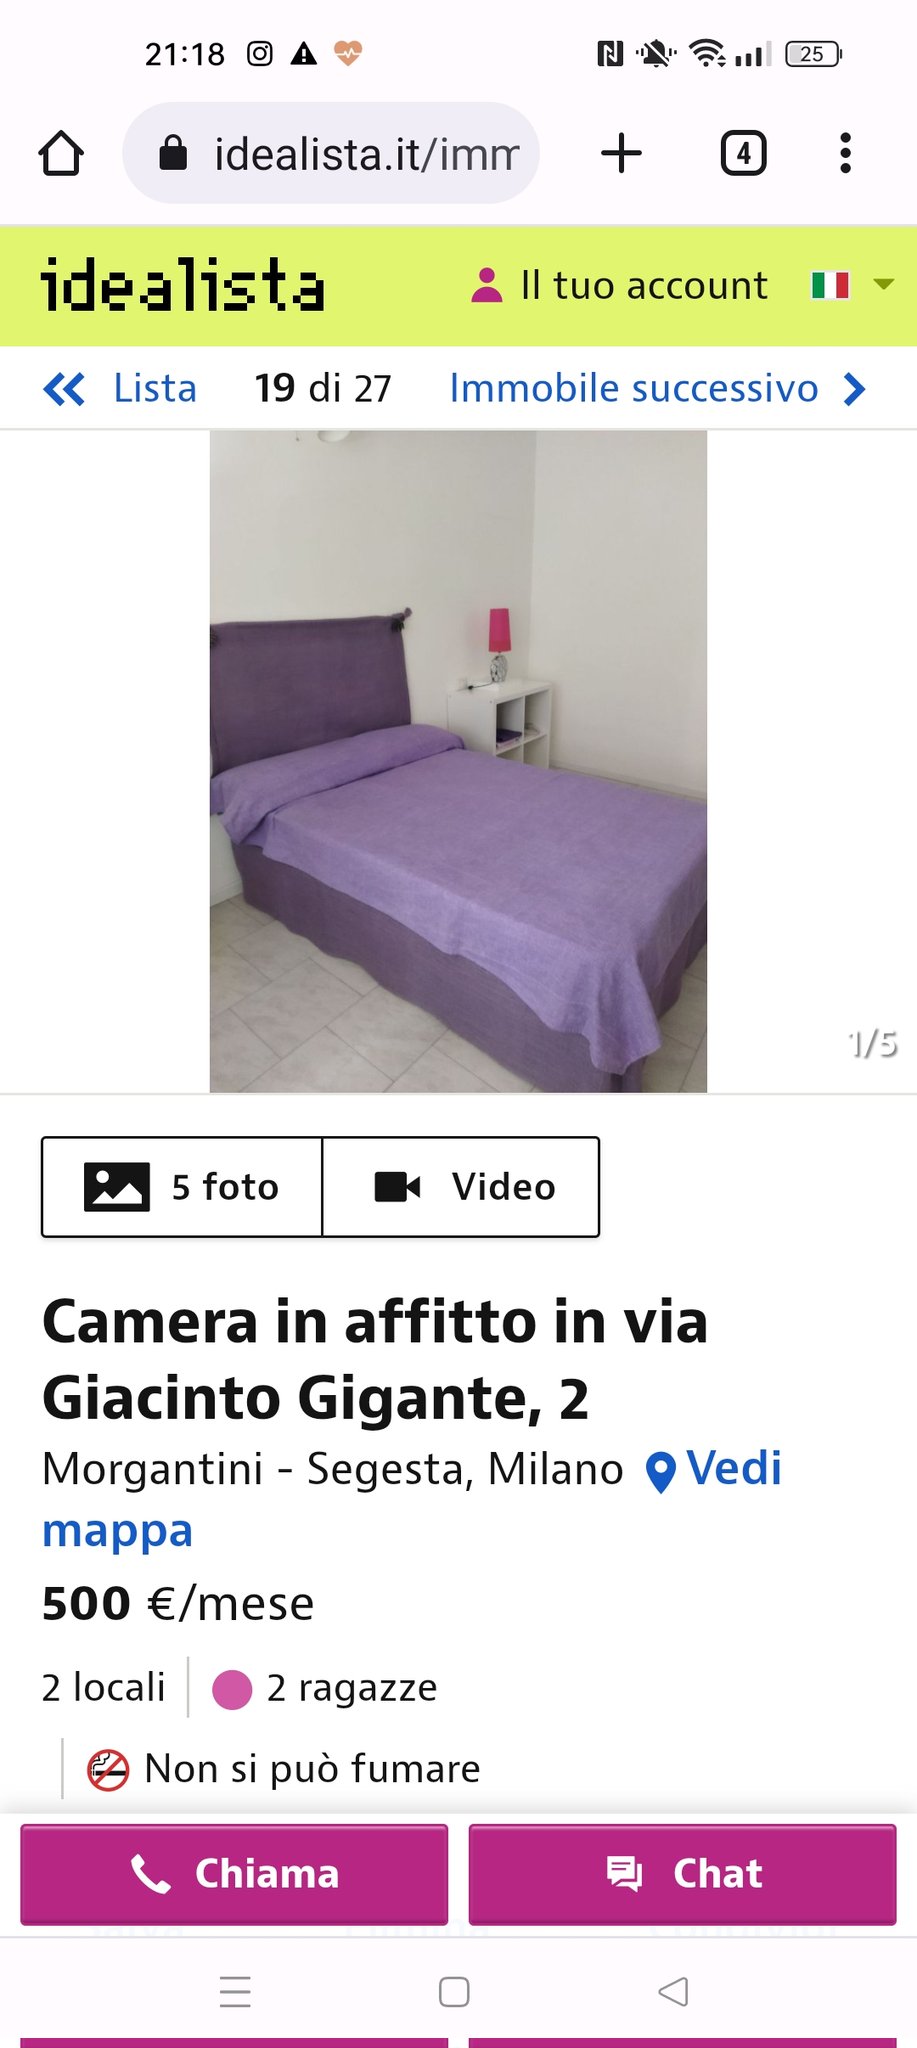 stanza in affitto a Milano a 500 euro al mese senza uso cucina